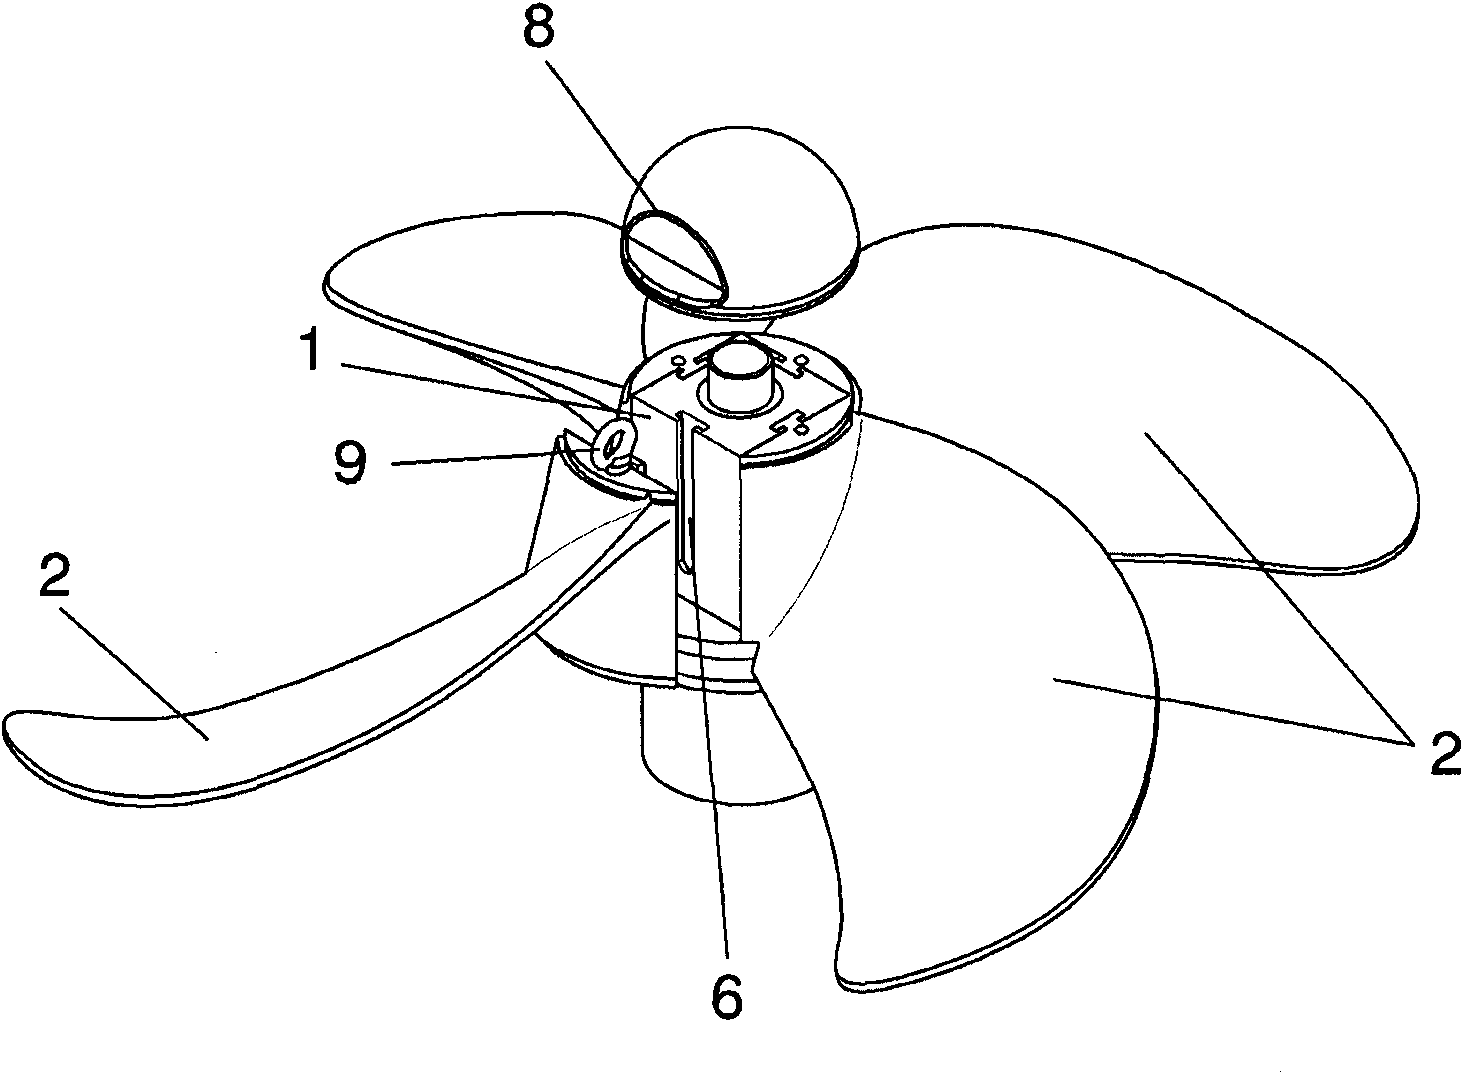 Propeller for vessels